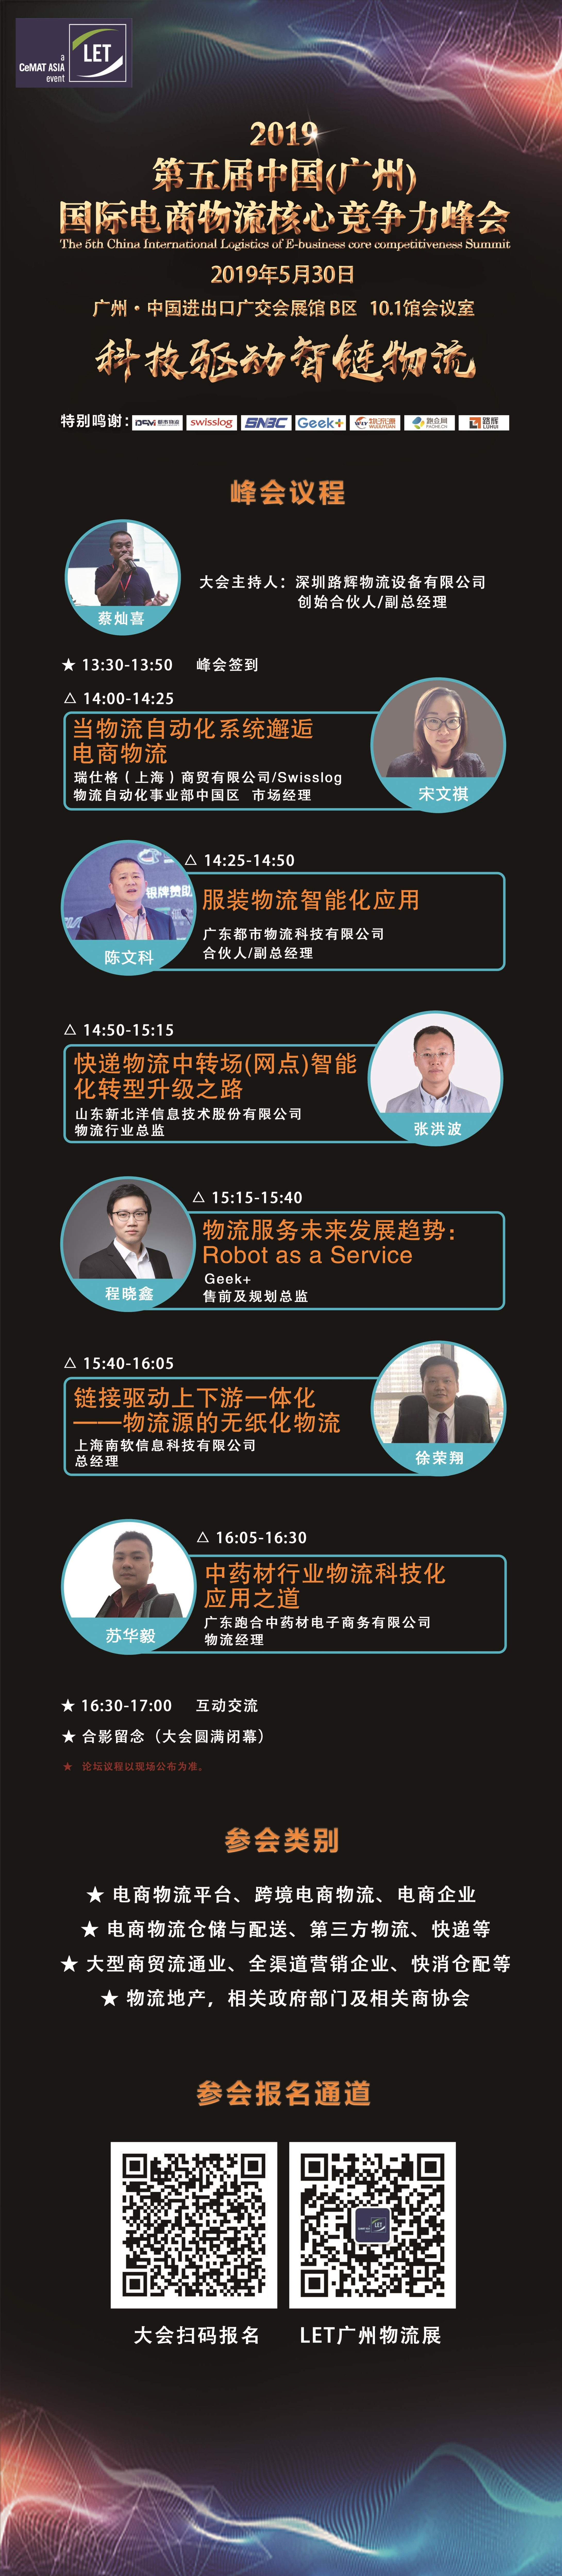 2019第五届中国（广州）国际电商物流核心竞争力峰会